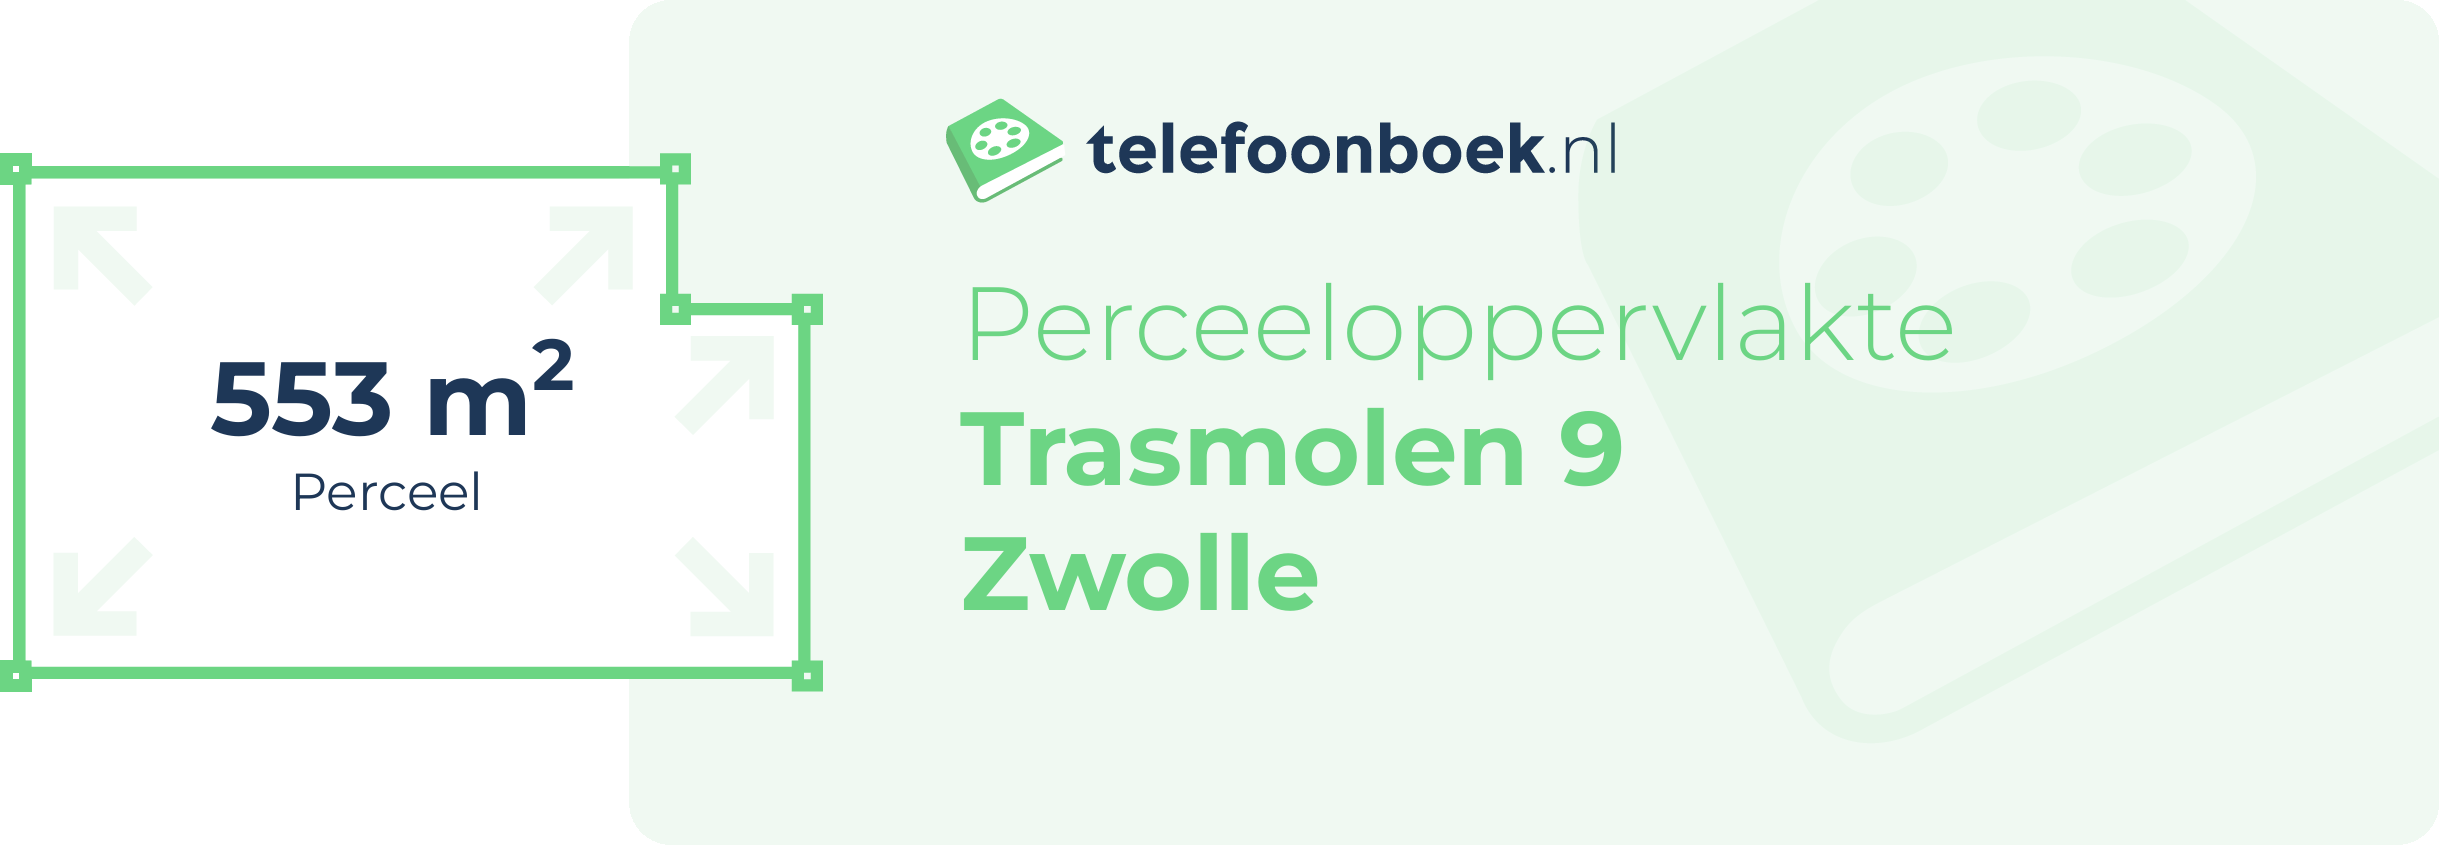 Perceeloppervlakte Trasmolen 9 Zwolle